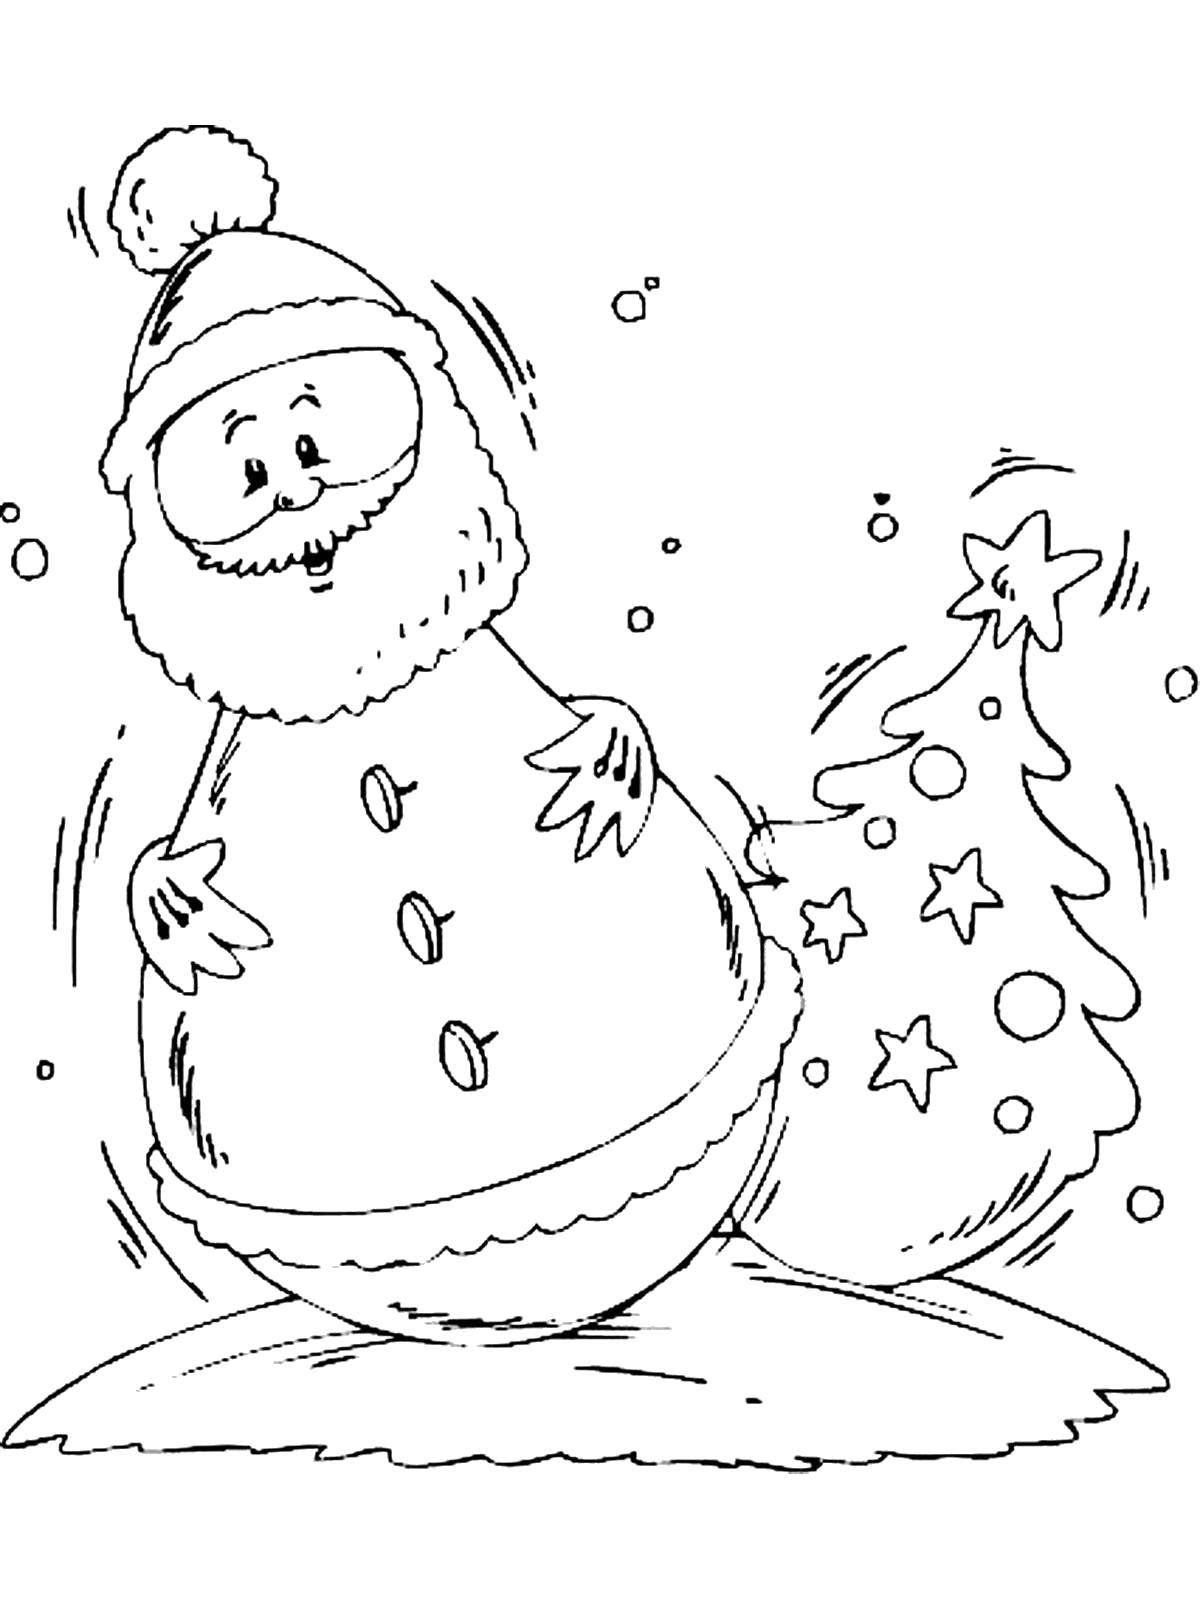 Название: Раскраска Игрушка дед мороз. Категория: дед мороз. Теги: Новый Год, Дед Мороз, игрушки.